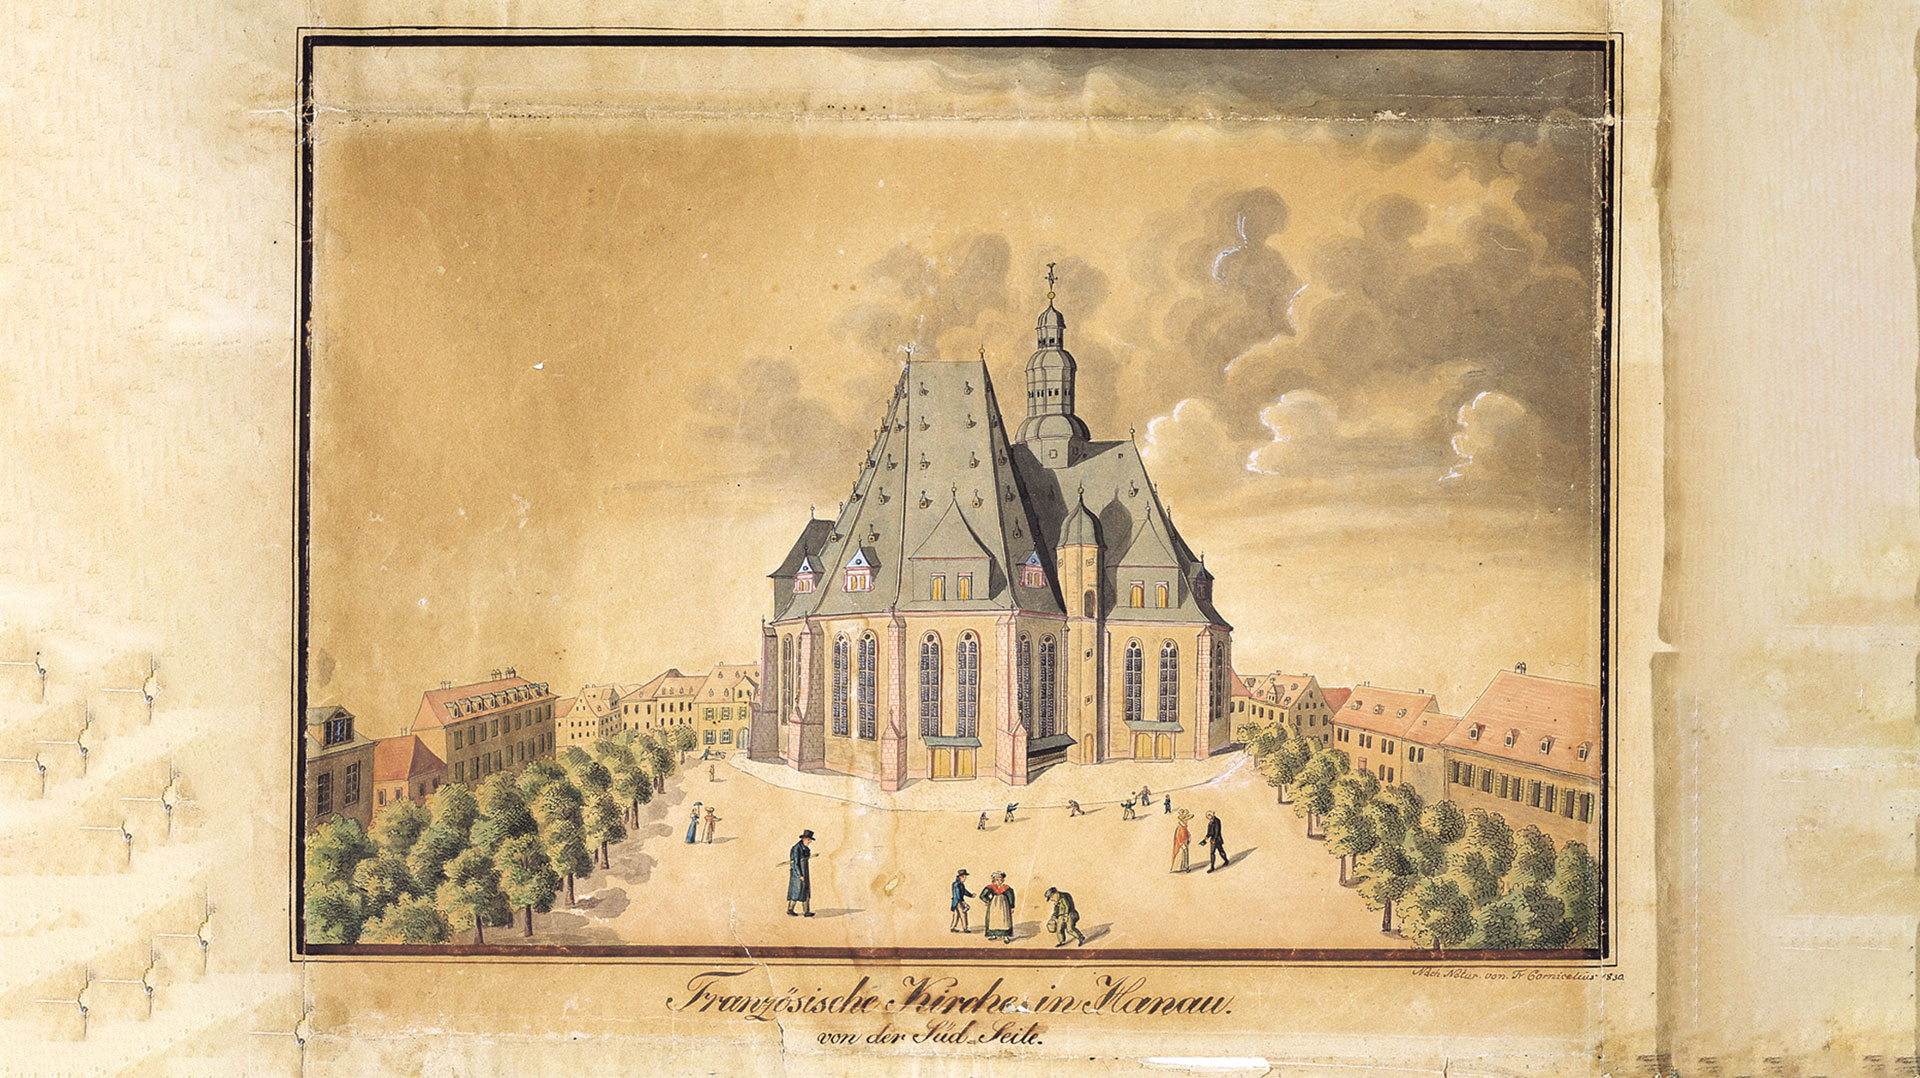 Wallonisch-Niederländische-Kirche Hanau | Bildquelle: Historisches Museum Hanau Schloss Philippsruhe/Hanauer Geschichtsverein 1844 e.V. 